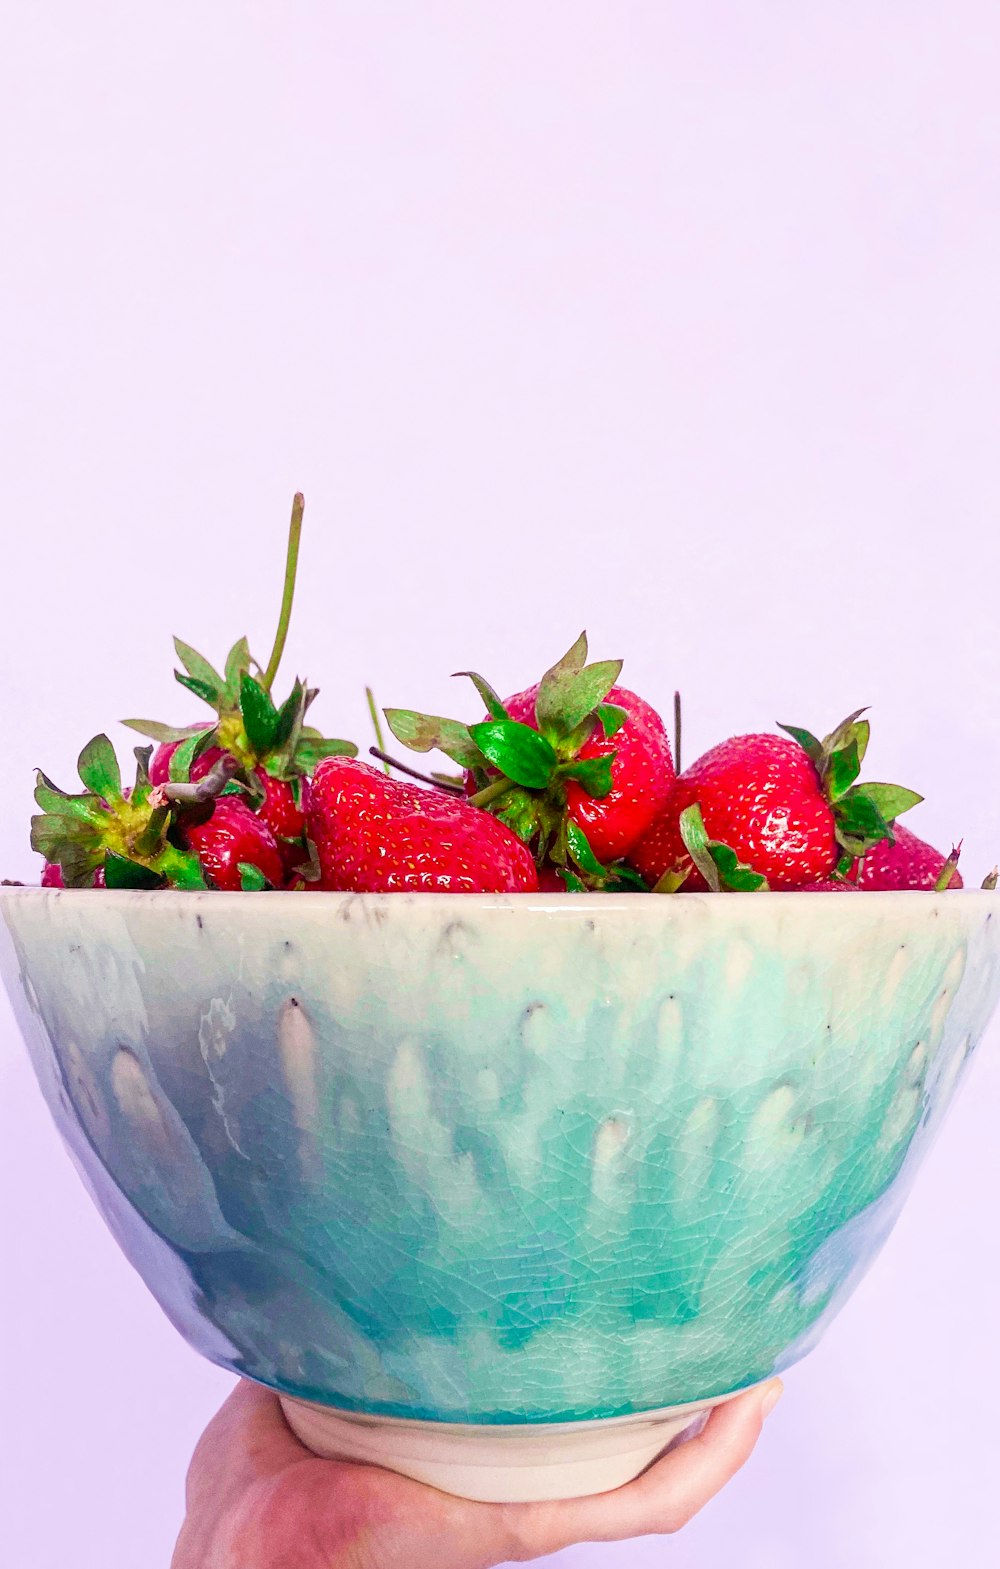 strawberries in teal ceramic bowl